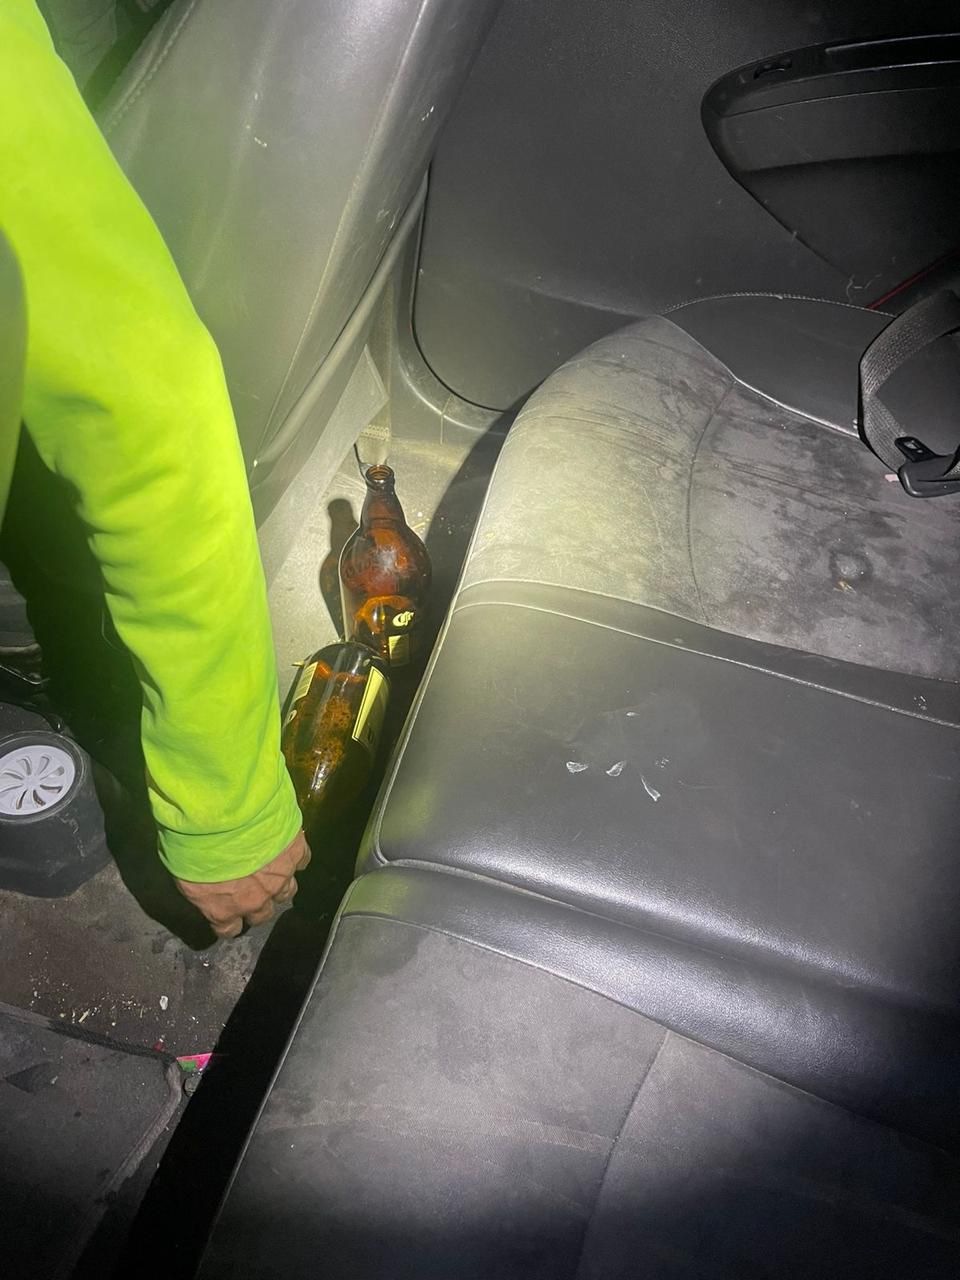 La Dirección de Policía Preventiva Municipal de Arteaga informó sobre la detención de tres individuos por consumir bebidas embriagantes abordó de un vehículo en movimiento/ Foto: Cortesía  